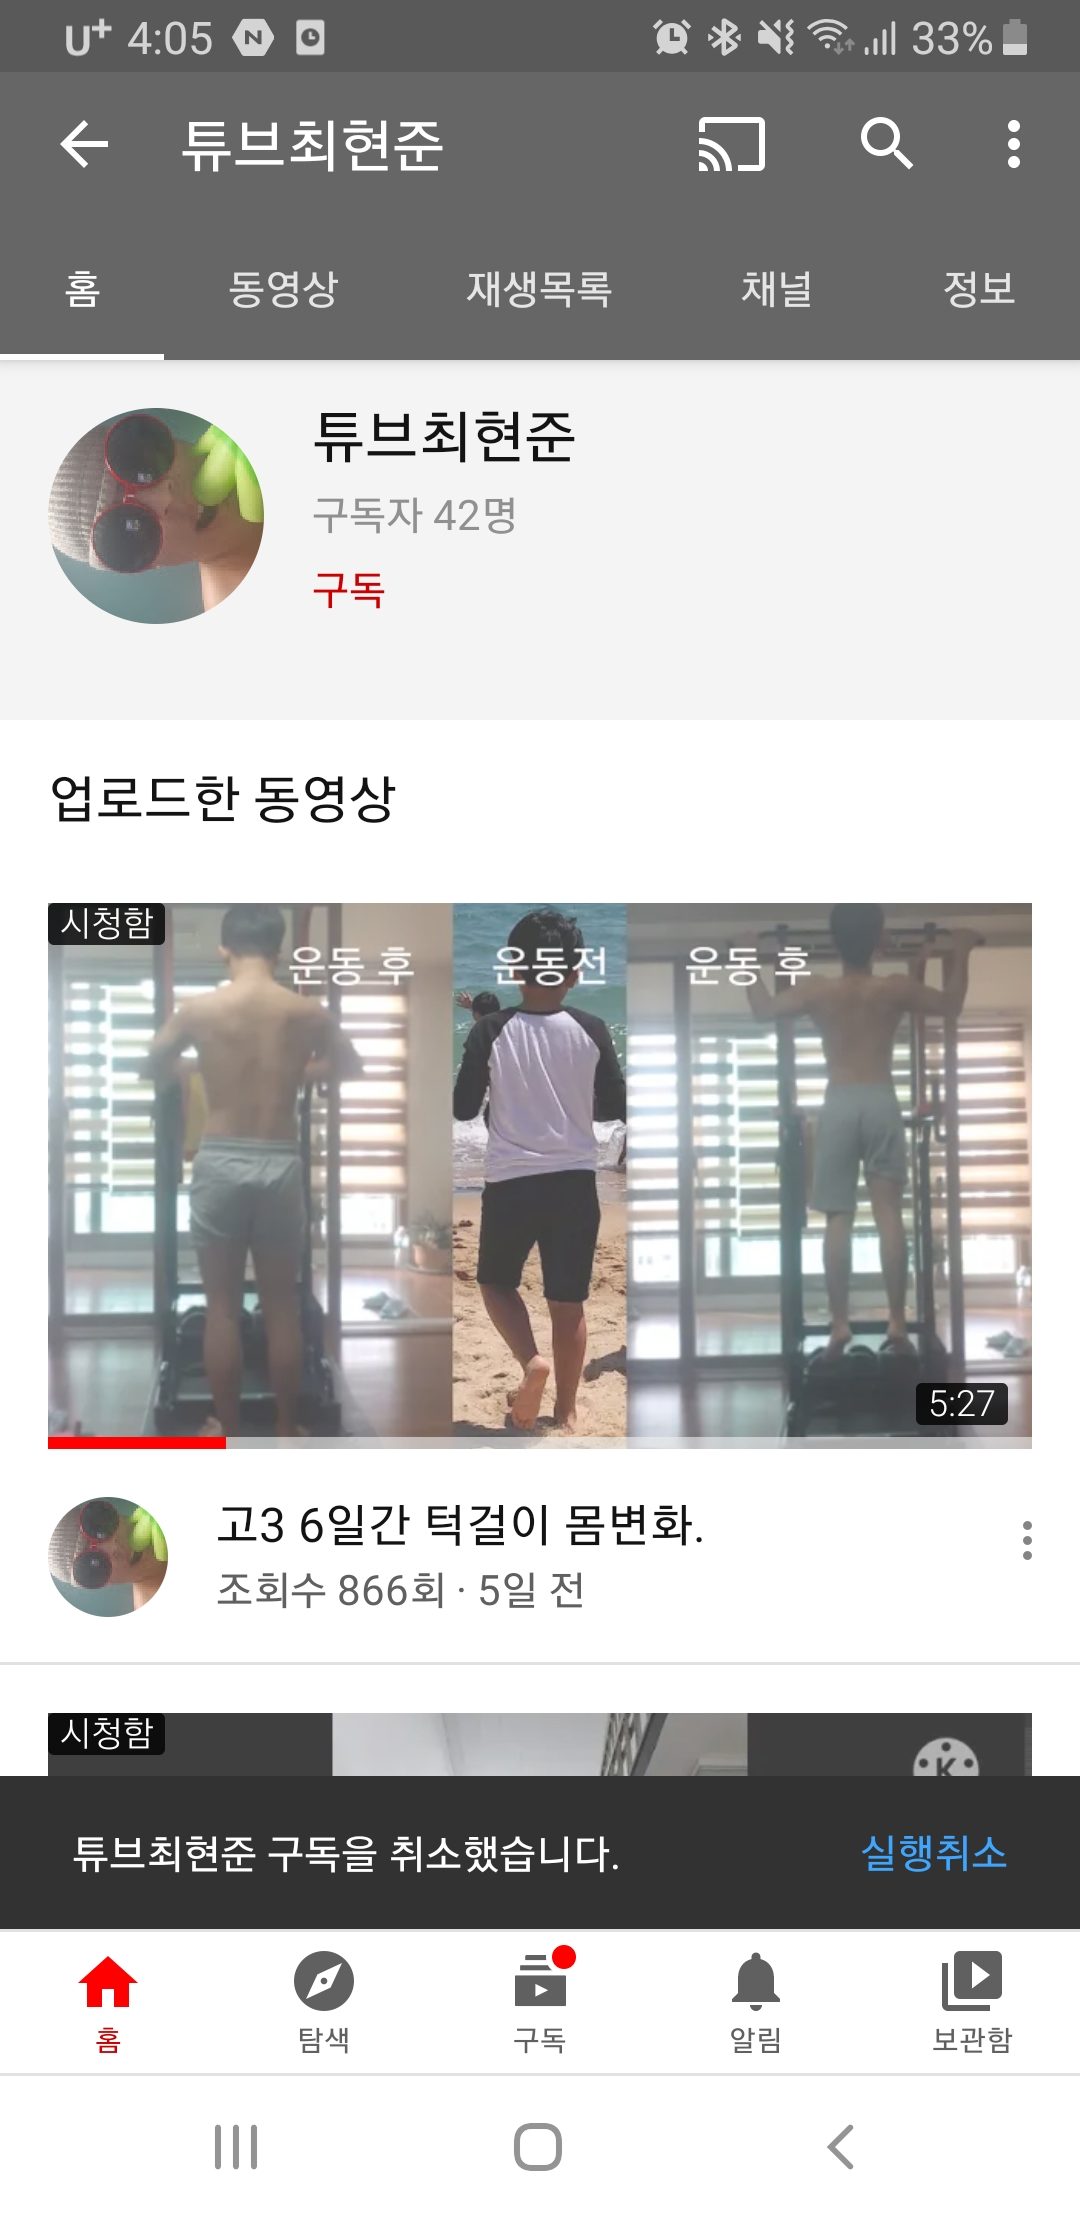 Screenshot_20201011-160516_YouTube.jpg : 한국인의 정! 맞구독해요. 구취없음!